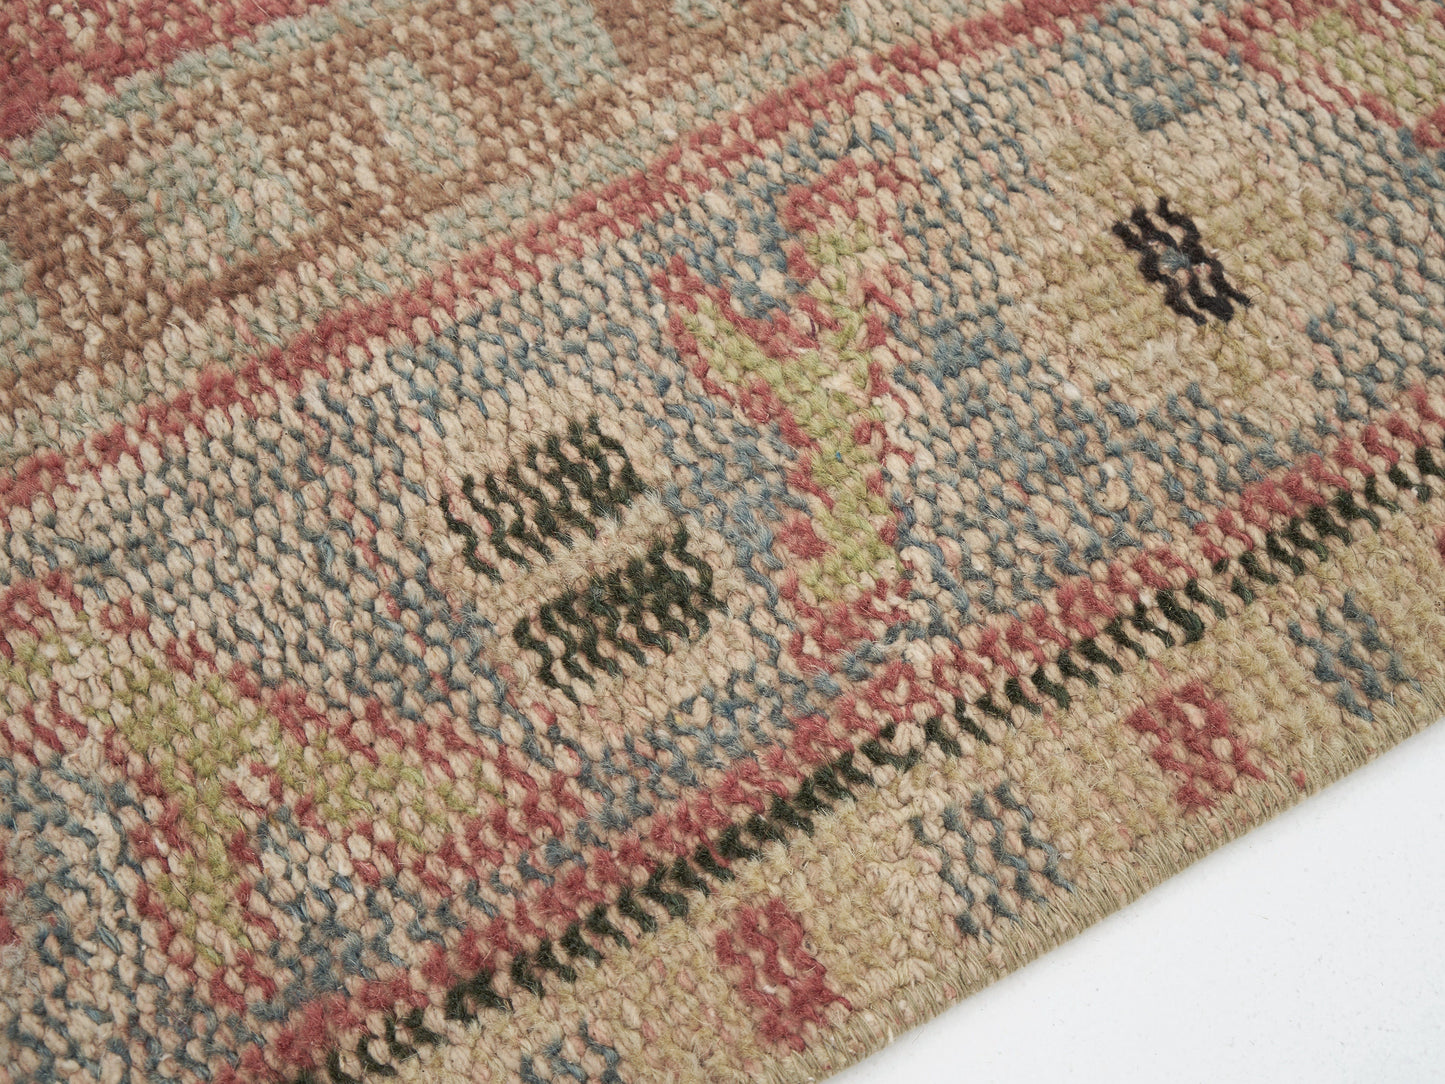 Rug 6x10, Area Rug, Turkish Rug, Vintage Rug, Handmade Rug, Oushak Rug, Neutral Rug, Anatolia Rug, Kid Room Rug, Turkish Carpet, 12095